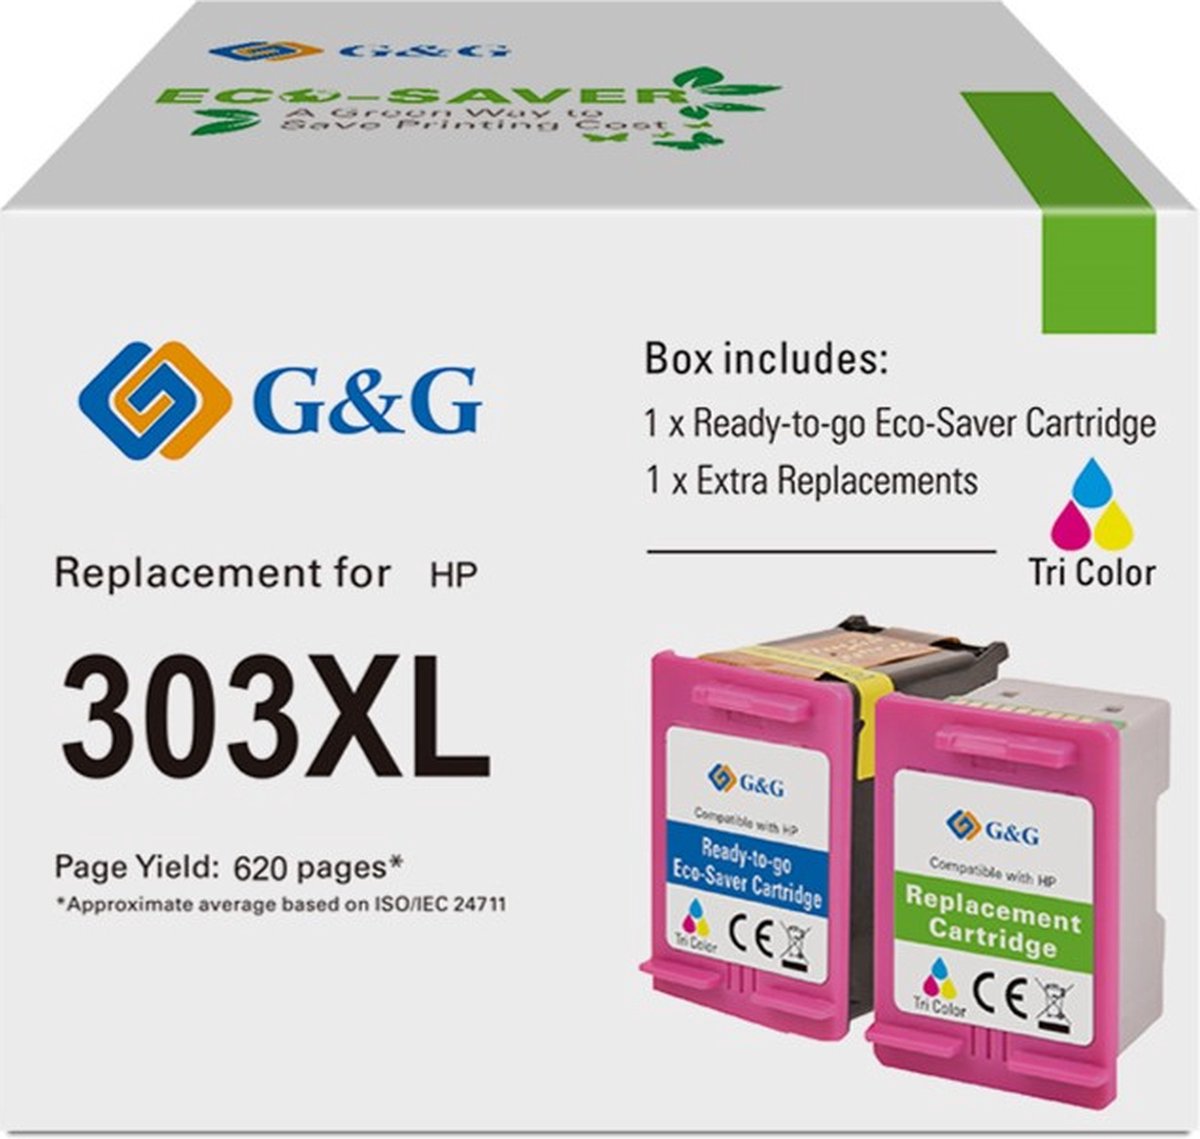 G&G 303 XL Compatibel voor HP 303XL Reman inktcartridges Huismerk (pak van 2) kleuren cartridges.